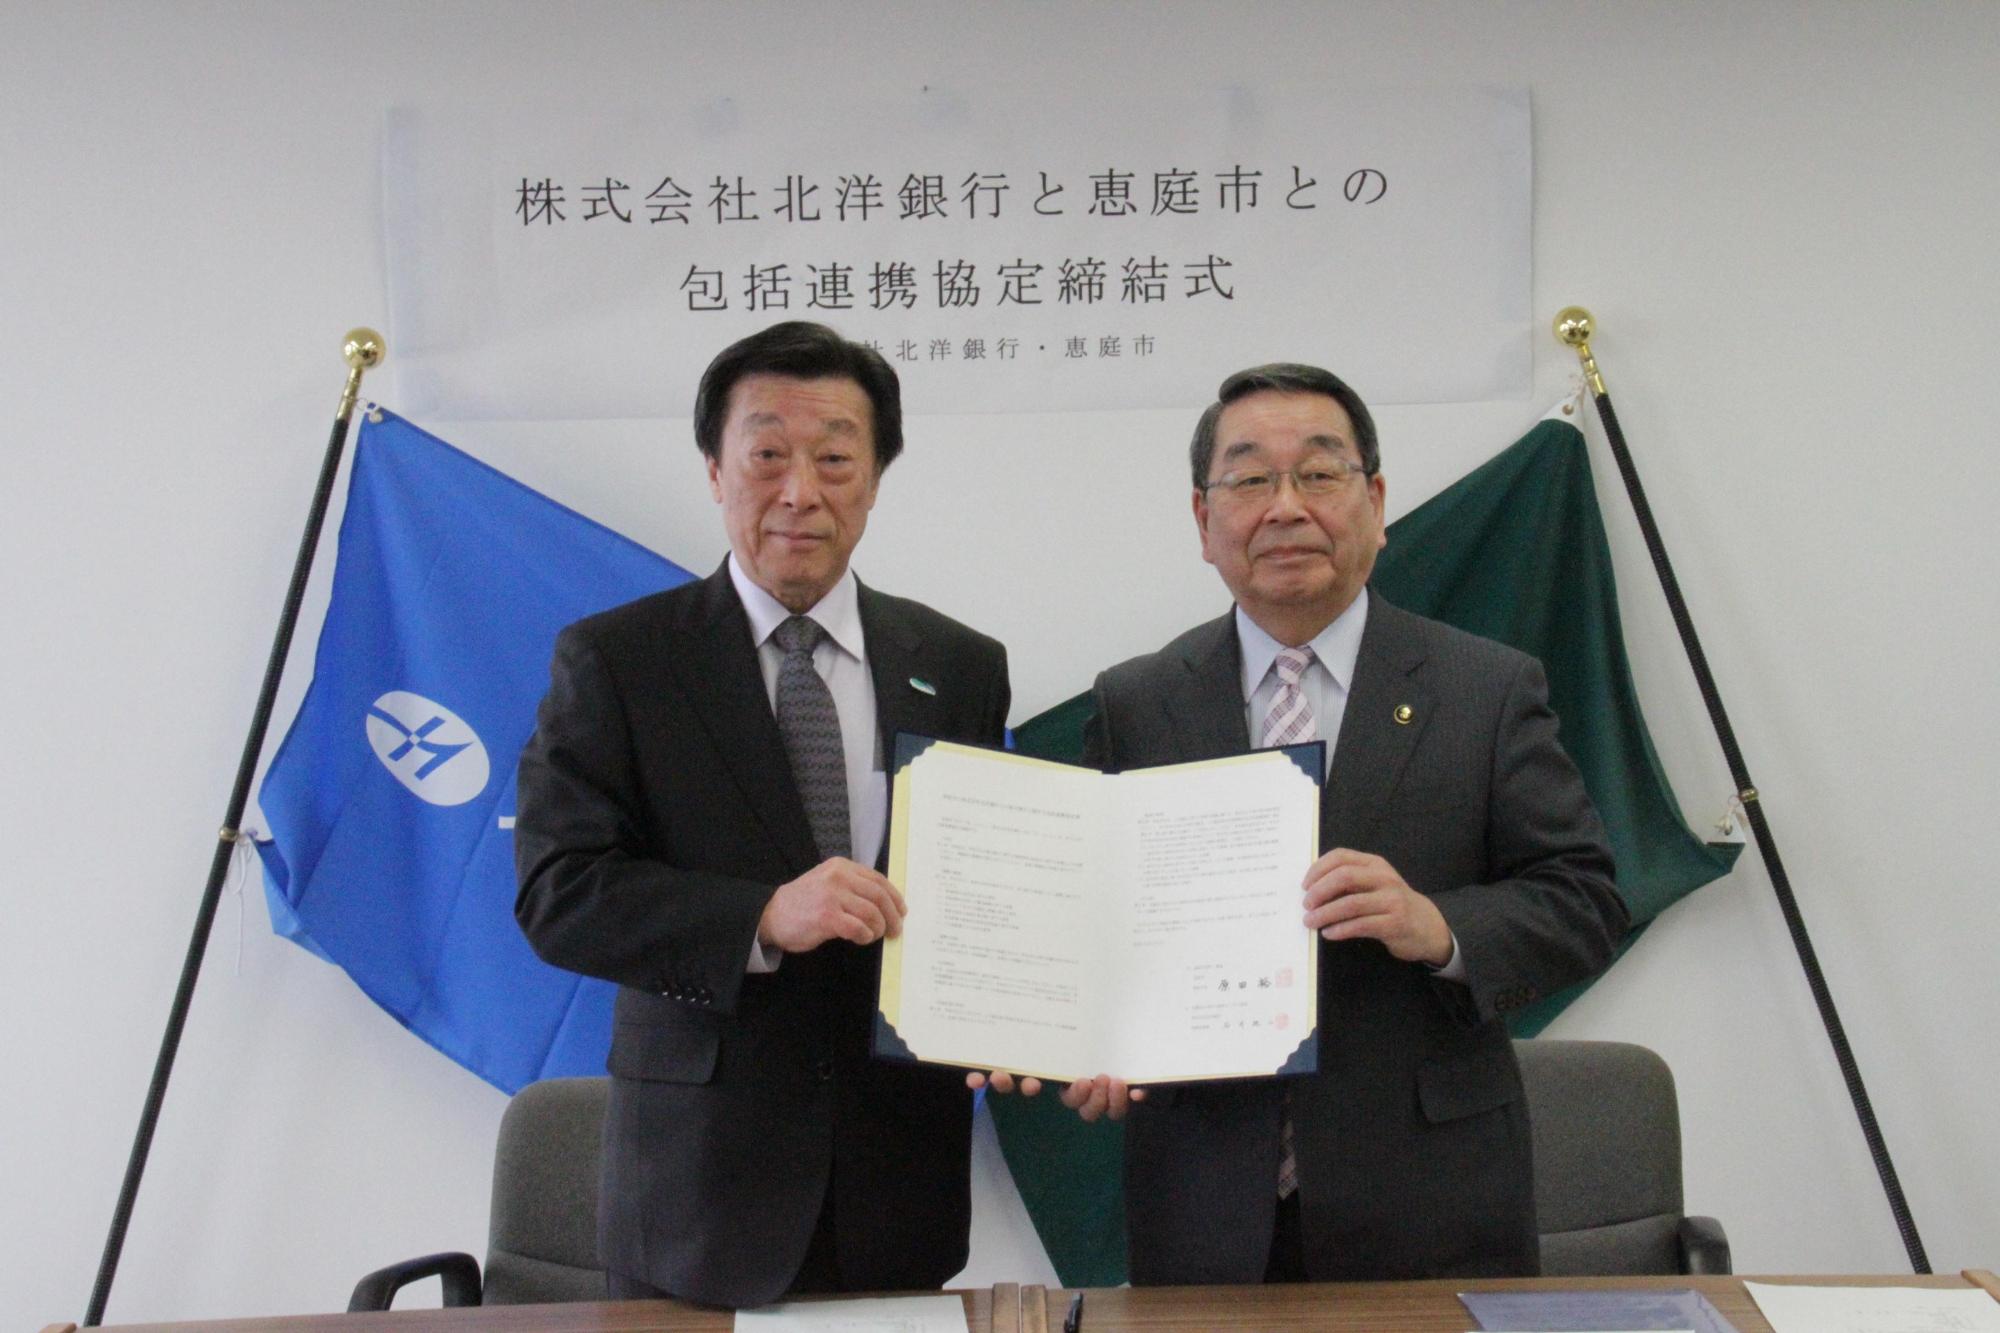 包括連携協定締結式にて北洋銀行の石井純二氏と恵庭市長の原田裕氏が包括連携協定書を持っている写真